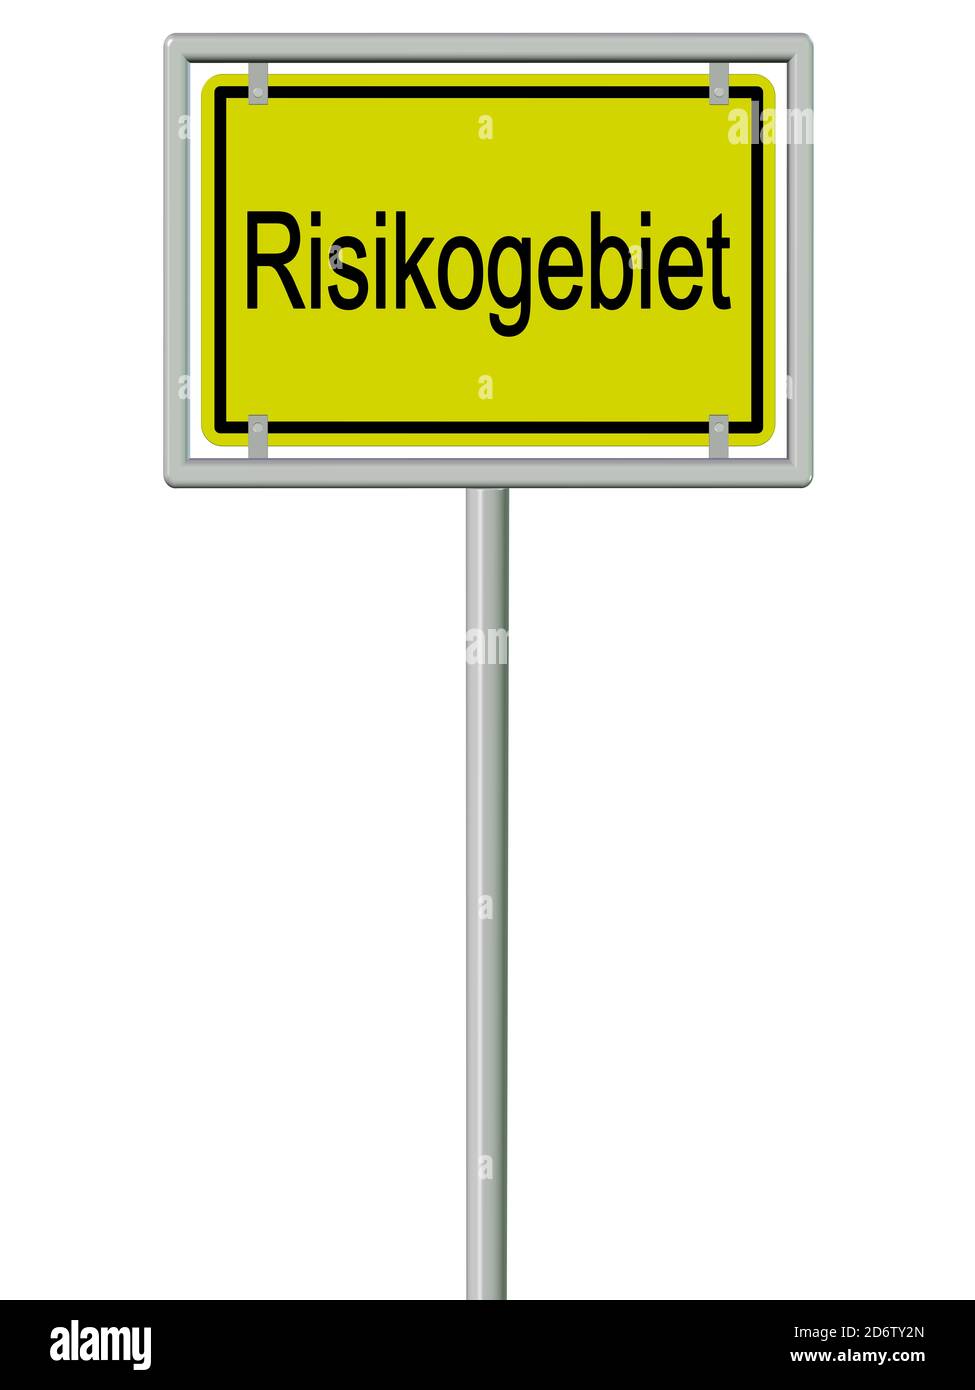 Segno del nome della località con la parola "Risikogebiet", traduzione "area di rischio" in un'illustrazione 3d su sfondo bianco Foto Stock